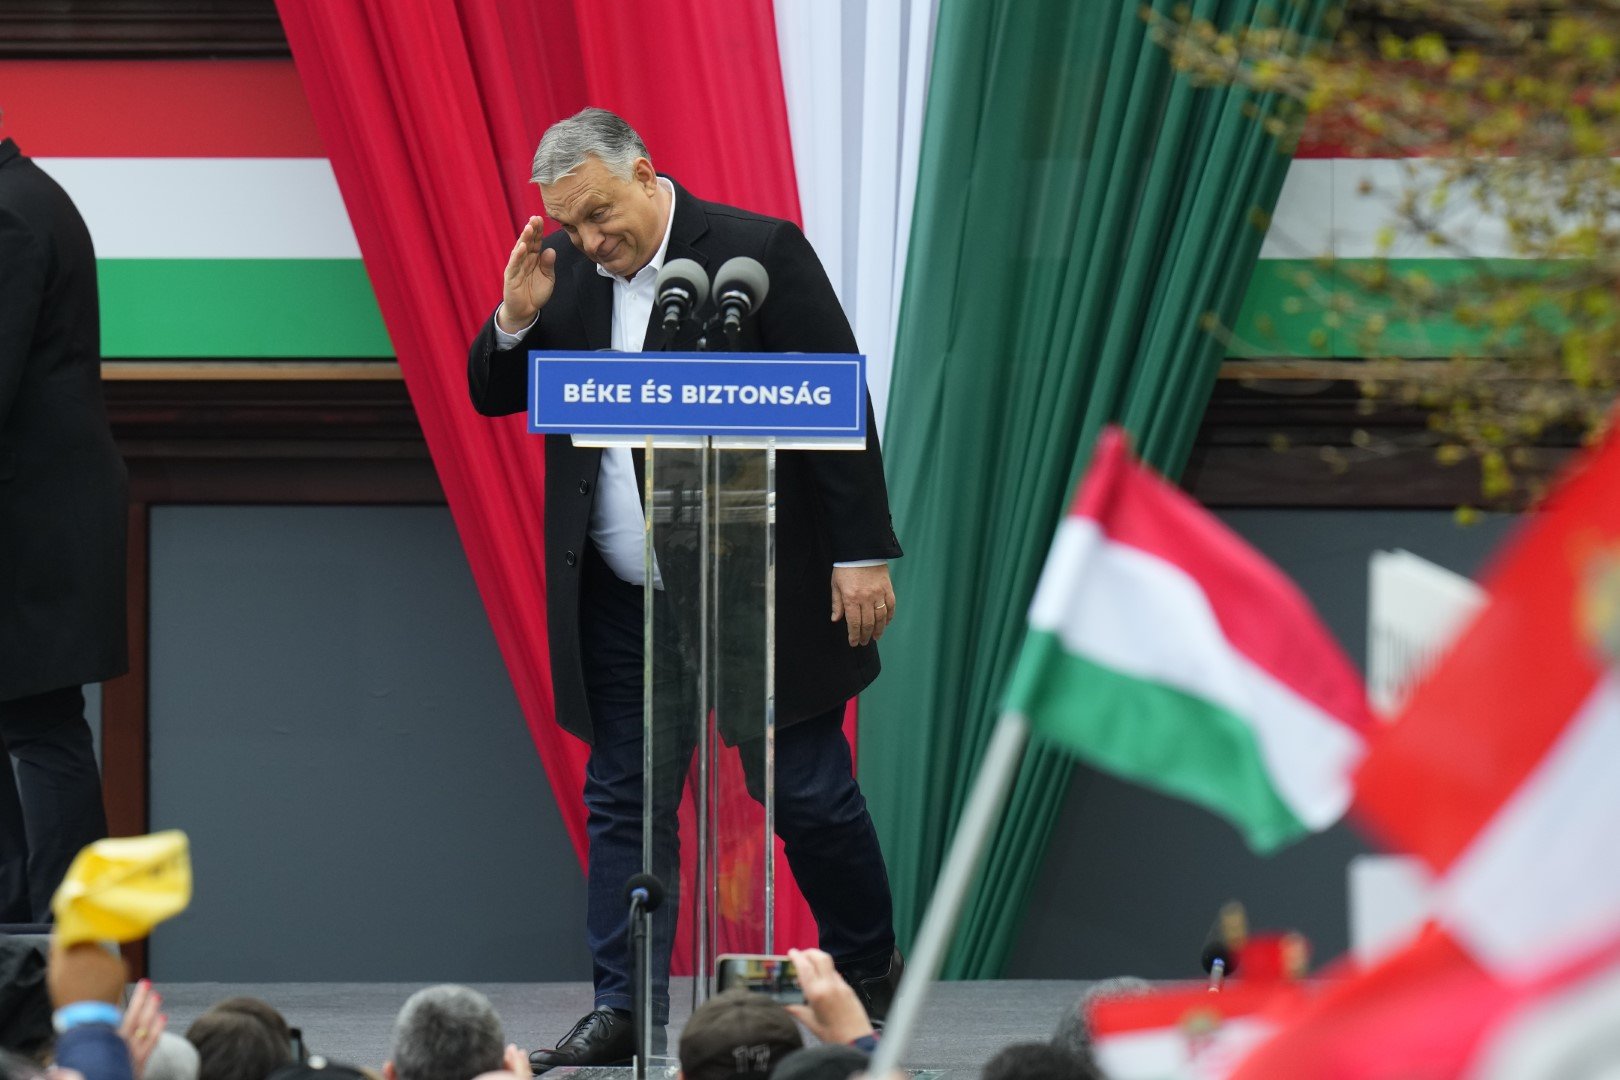 Премиерът Виктор Орбан поздравява поддръжниците си преди да произнесе реч по време на последния предизборен митинг на неговата партия Фидес преди изборите в неделя, в Секешфехервар на 1 април 2022 г.